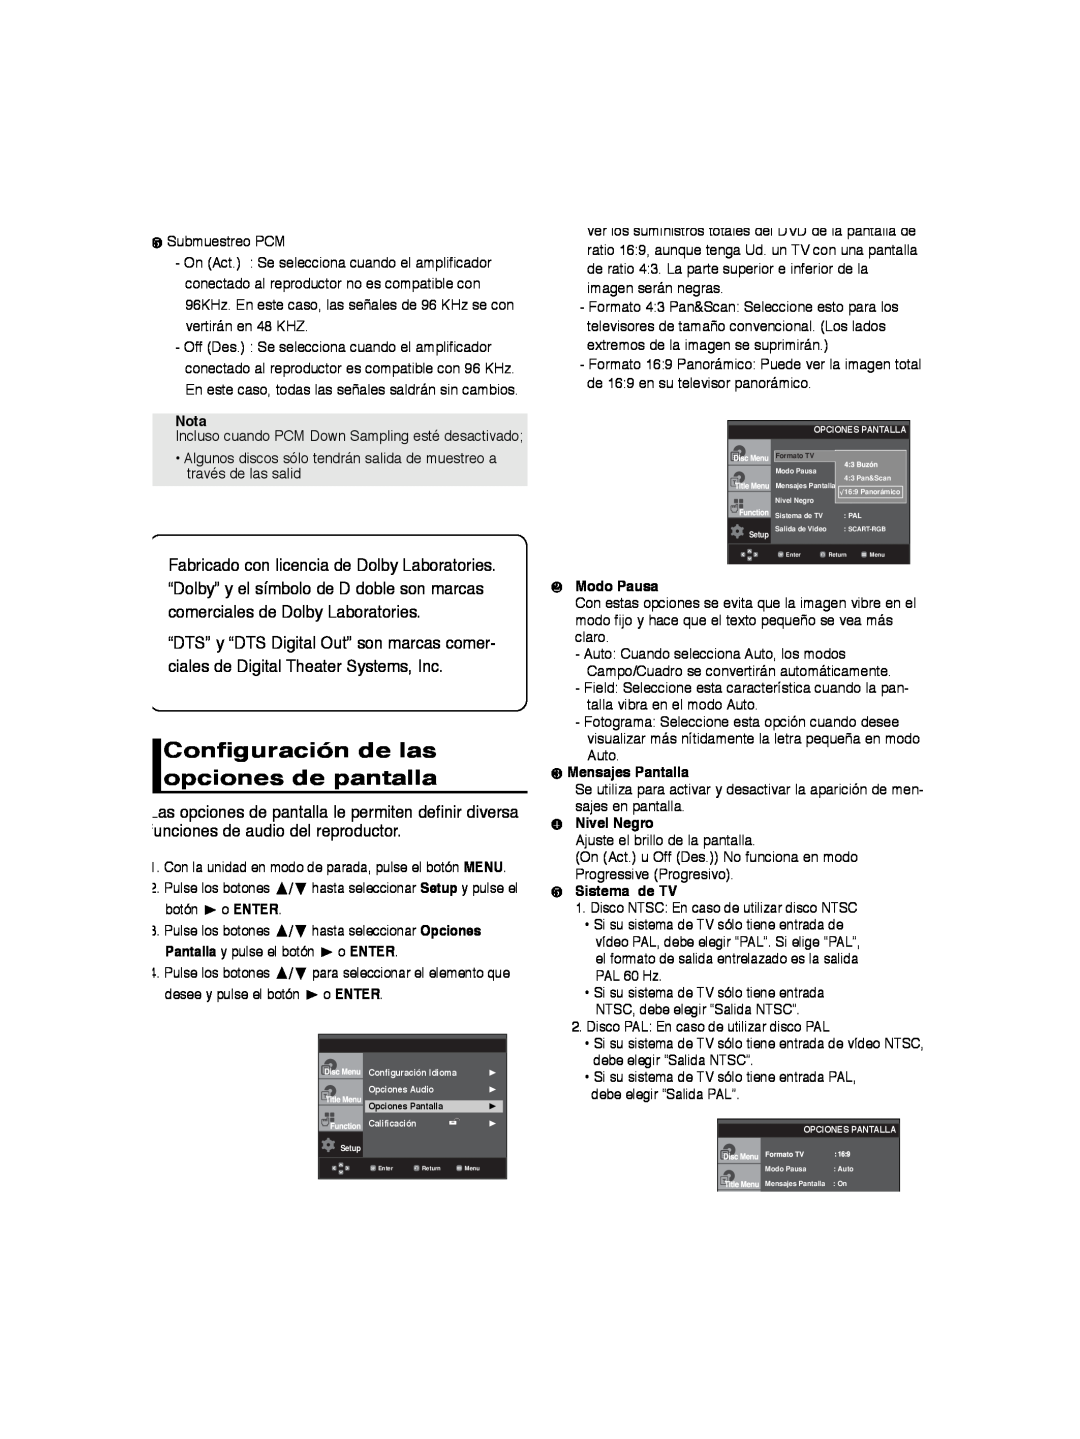 Samsung DVD-P260K/AFR manual Configuración de las opciones de pantalla, Nota, o ENTER, ❷ Modo Pausa, ❸ Mensajes Pantalla 